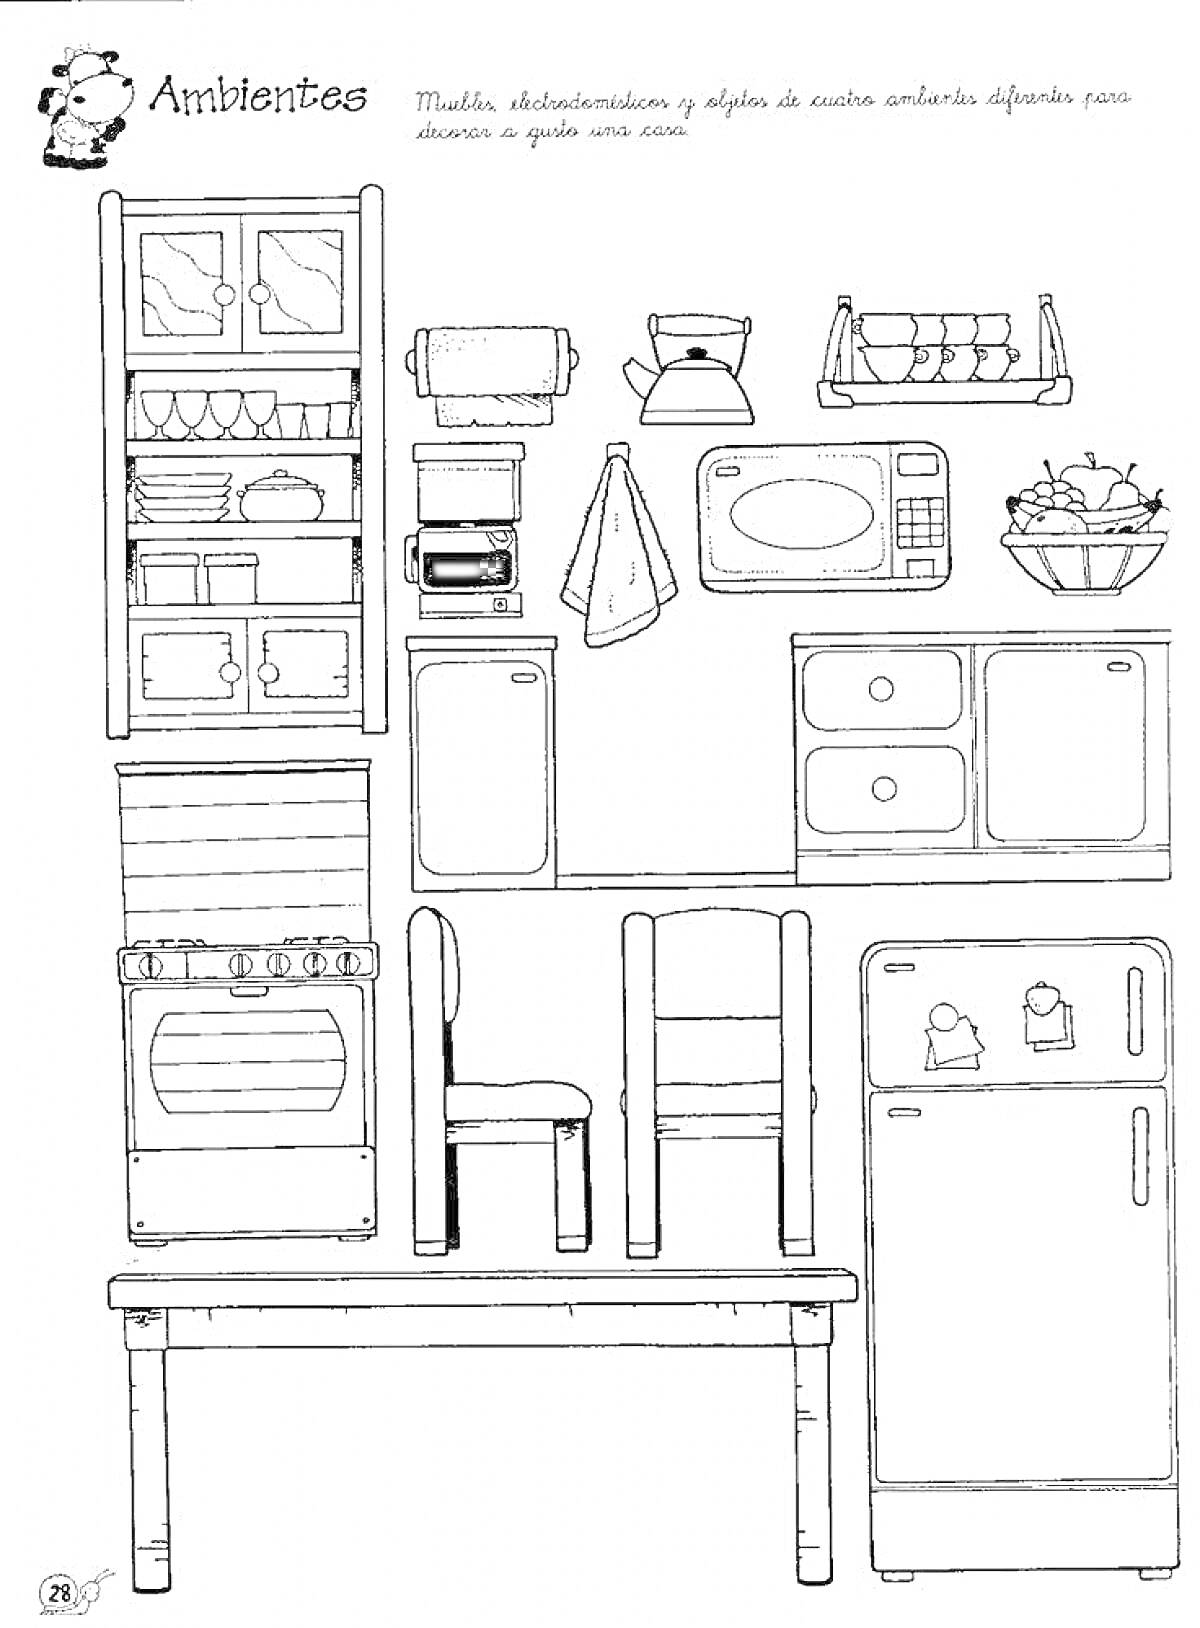 Раскраска Кухонная мебель для кукол: шкаф с посудой, микроволновка, чайник, тостер, открытые полки с чашками, полотенце, духовой шкаф, стол, два стула, холодильник с магнитами, полки, миска с овощами.